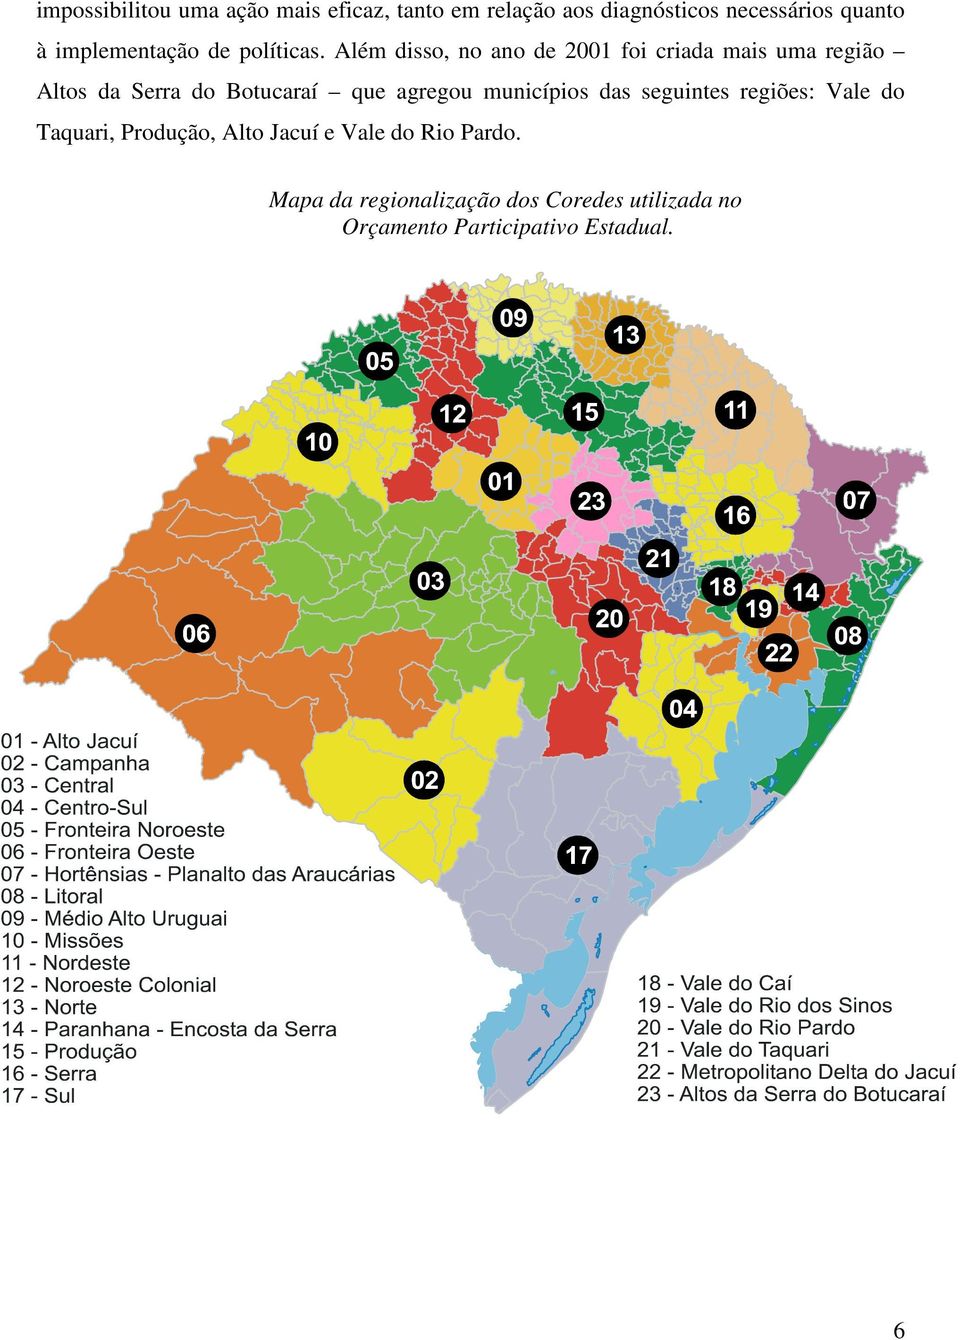 Além disso, no ano de 2001 foi criada mais uma região Altos da Serra do Botucaraí que agregou